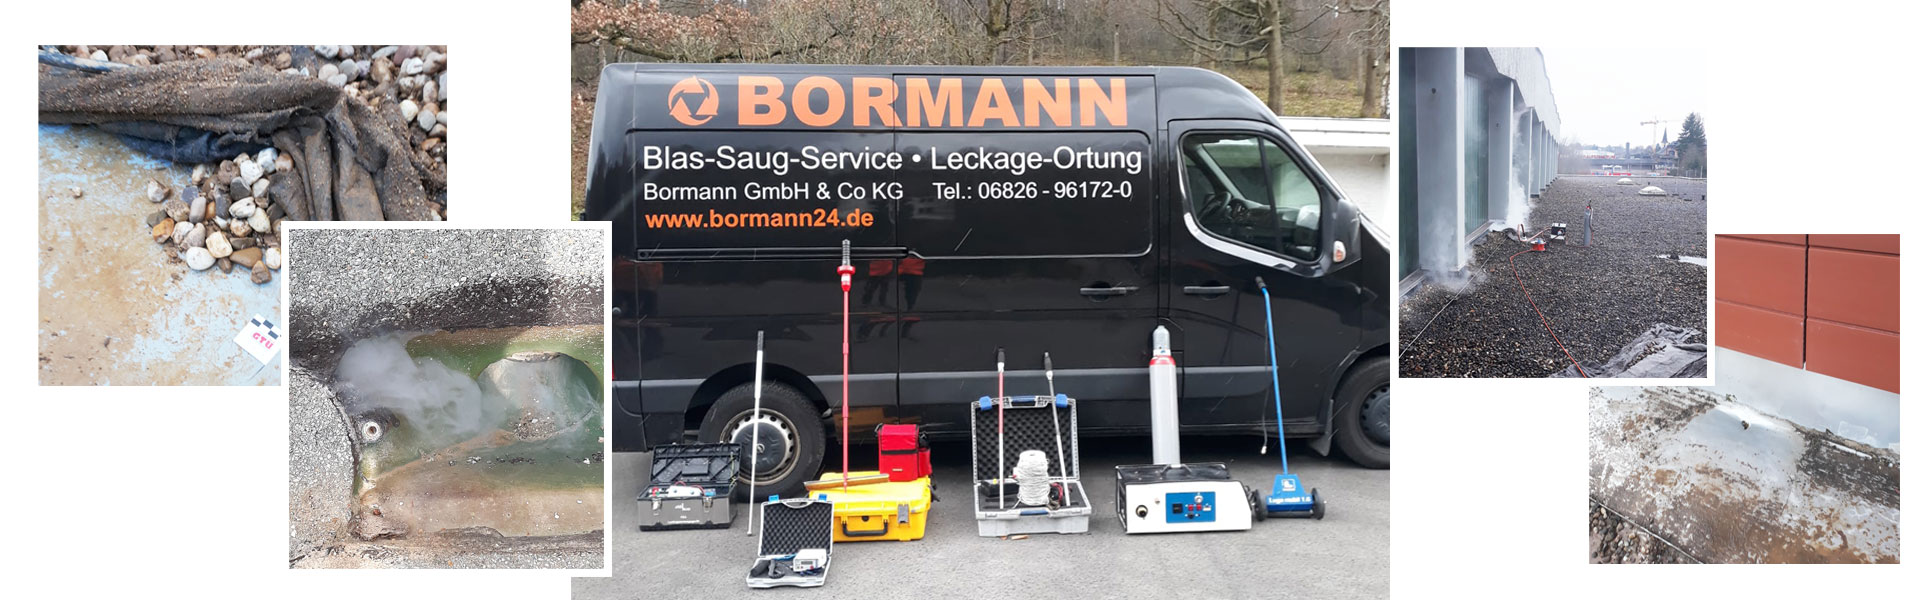 Firmenfahrzeug der Firma Bormann mit unterschiedlichen Prüfgeräten zur Leckageortung für Flachdächer wird dargestellt